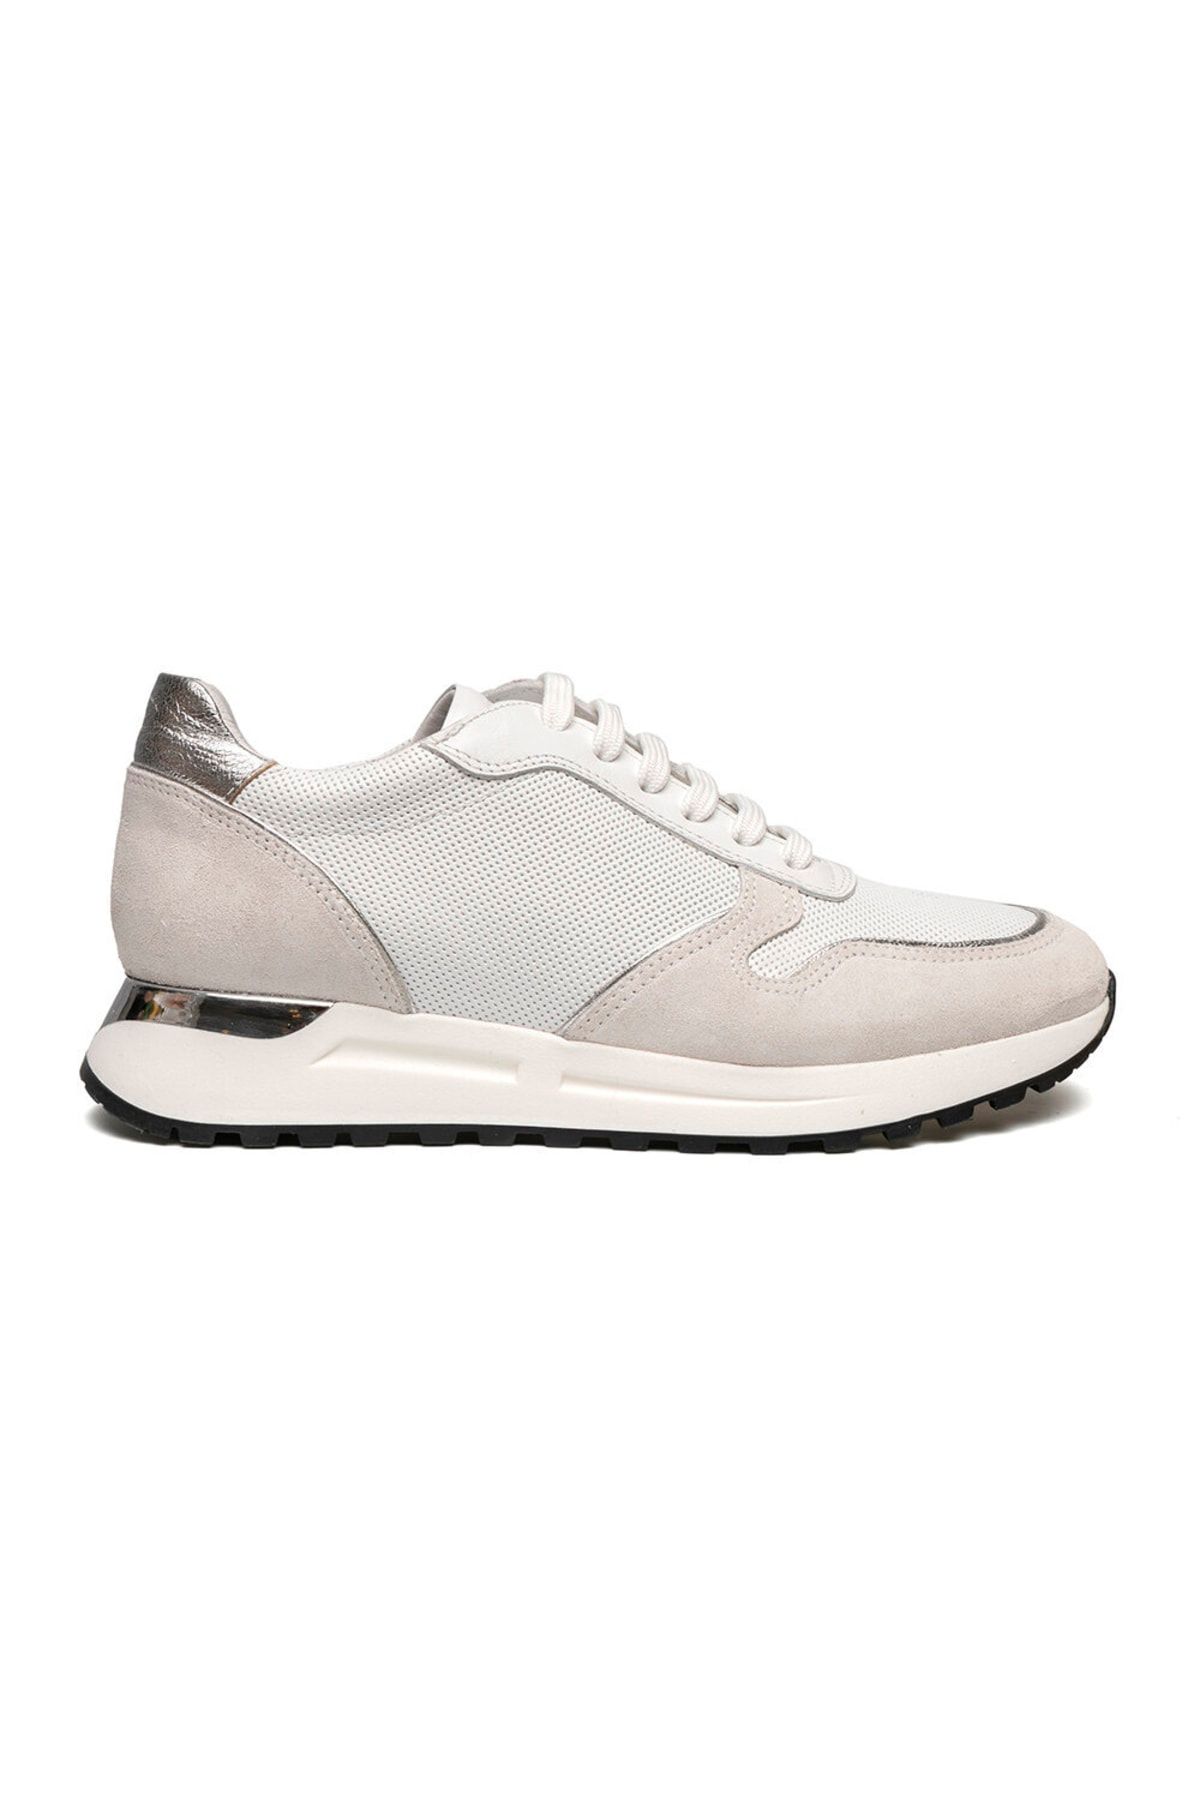 Greyder Kadın Beyaz Hakiki Deri Sneaker Ayakkabı 2y2sa57935